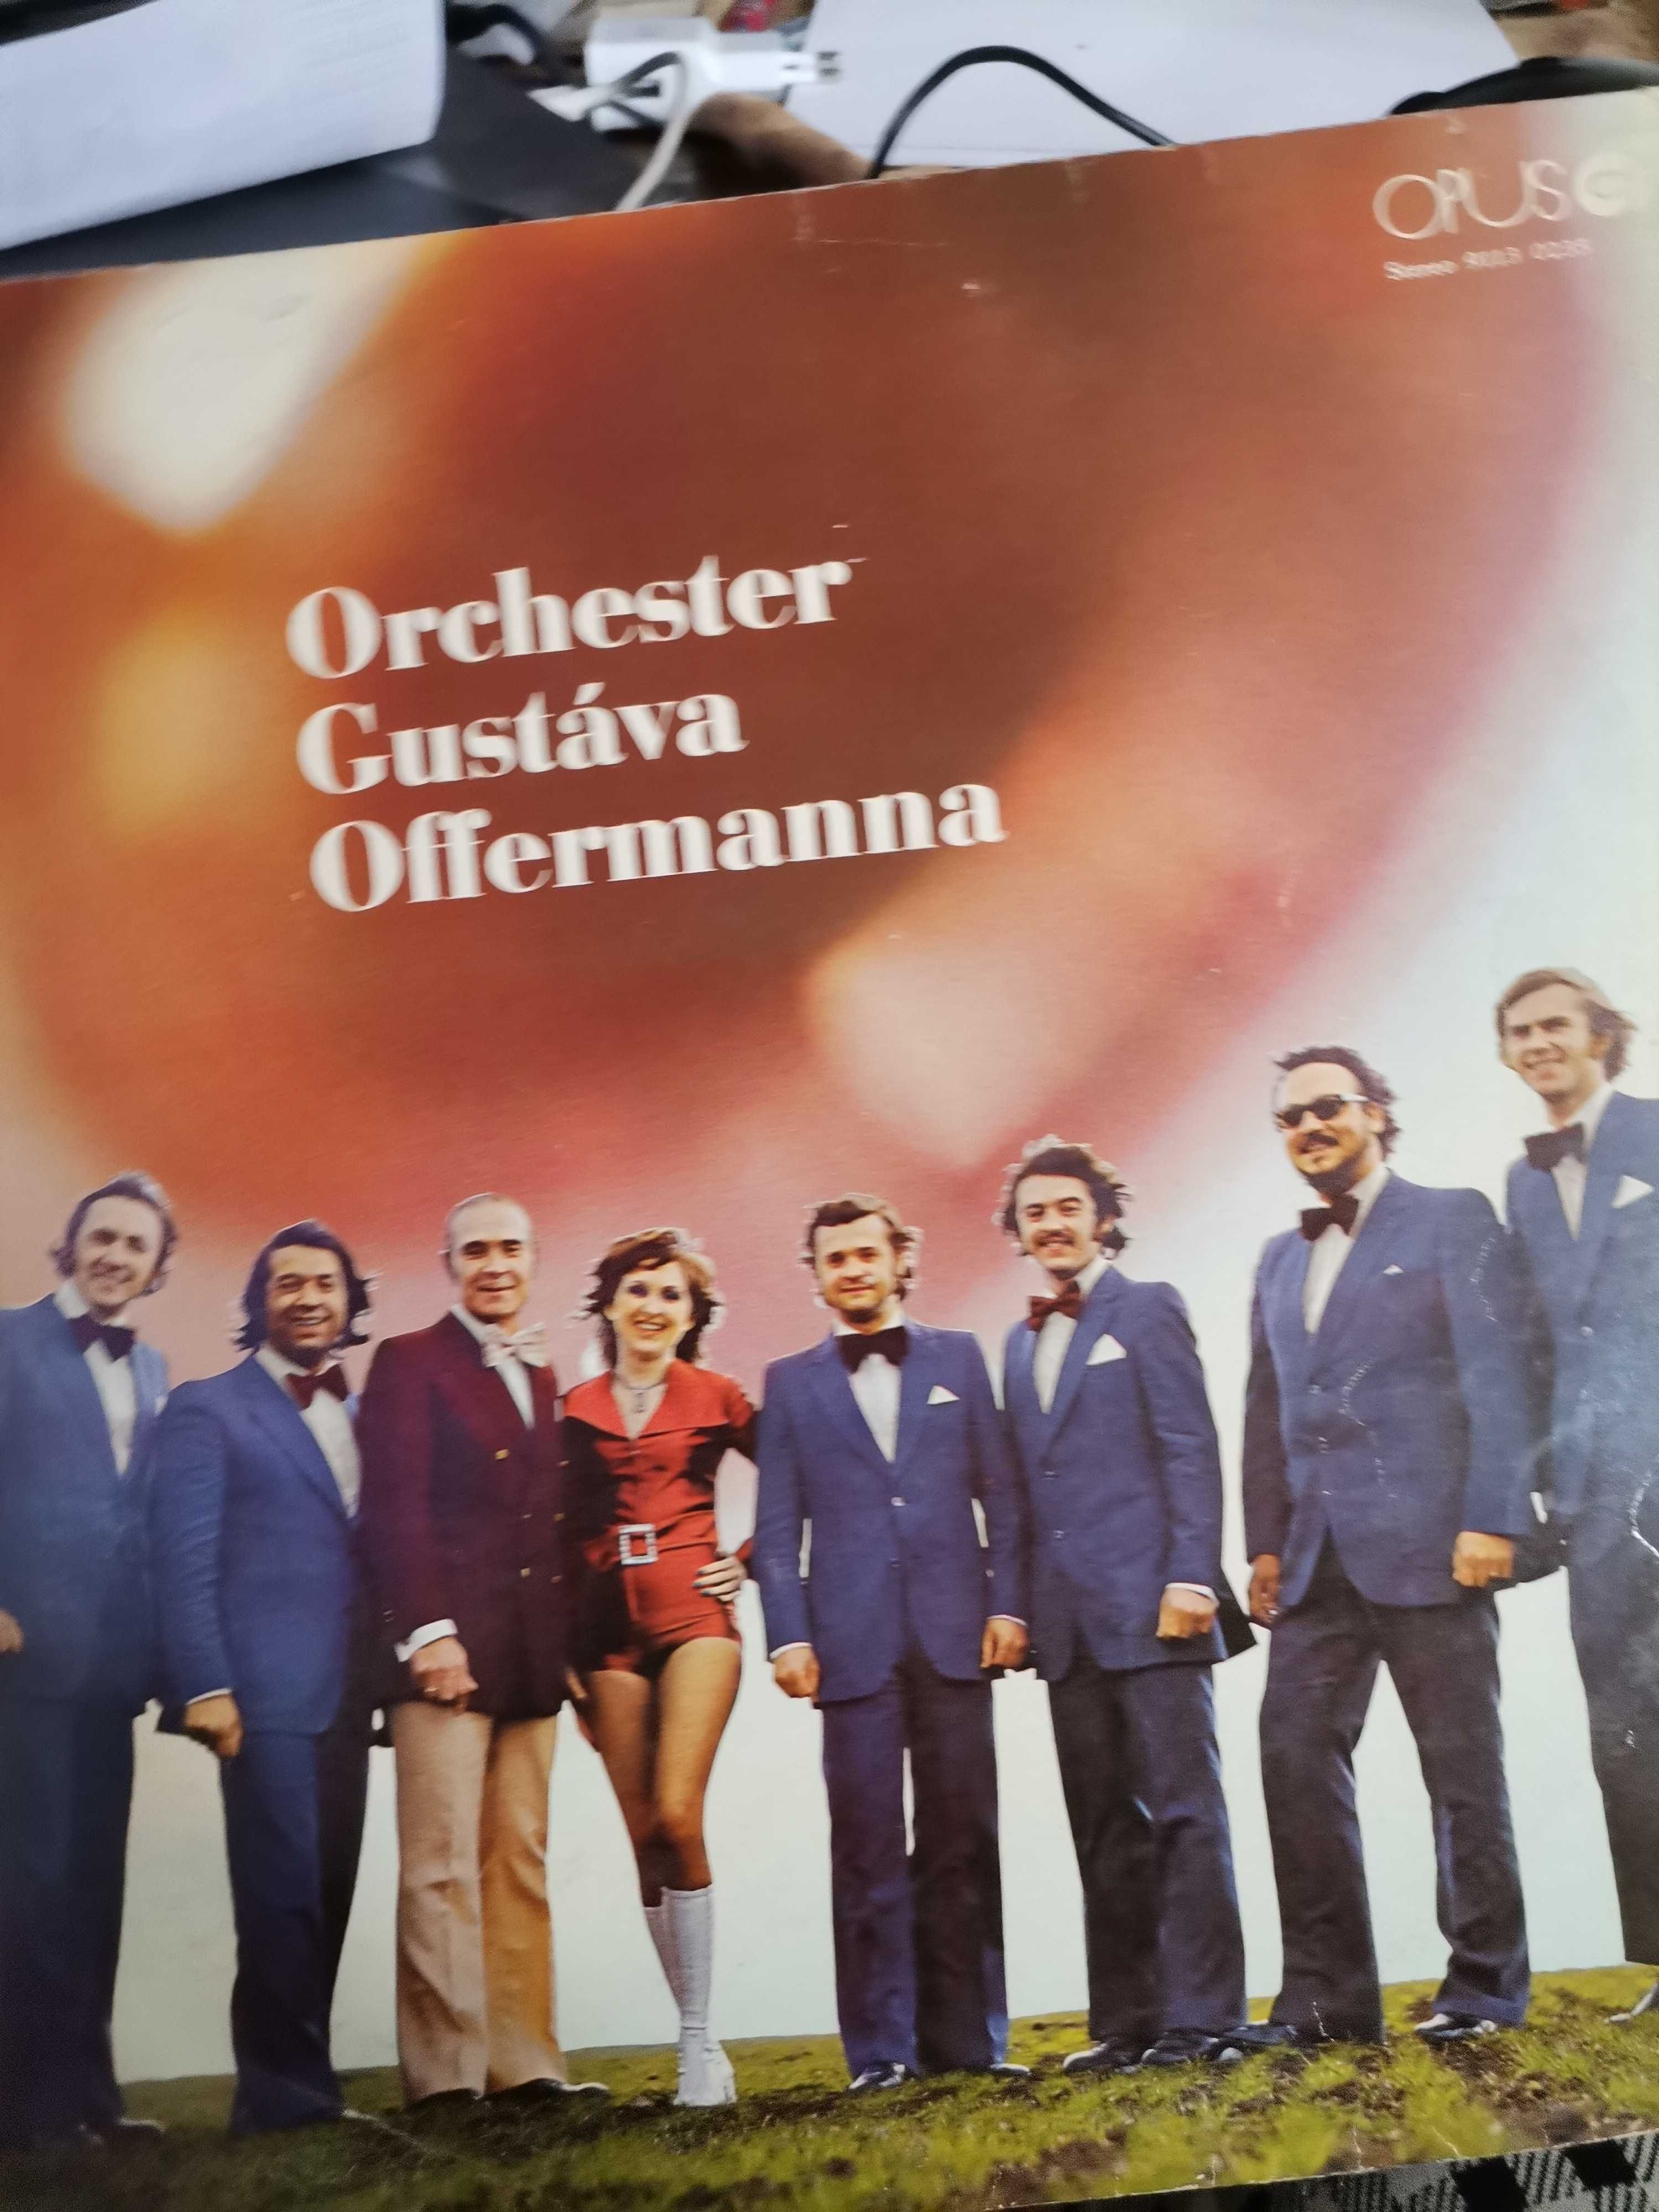 płyta winylowa Orchester Gustava Offermanna